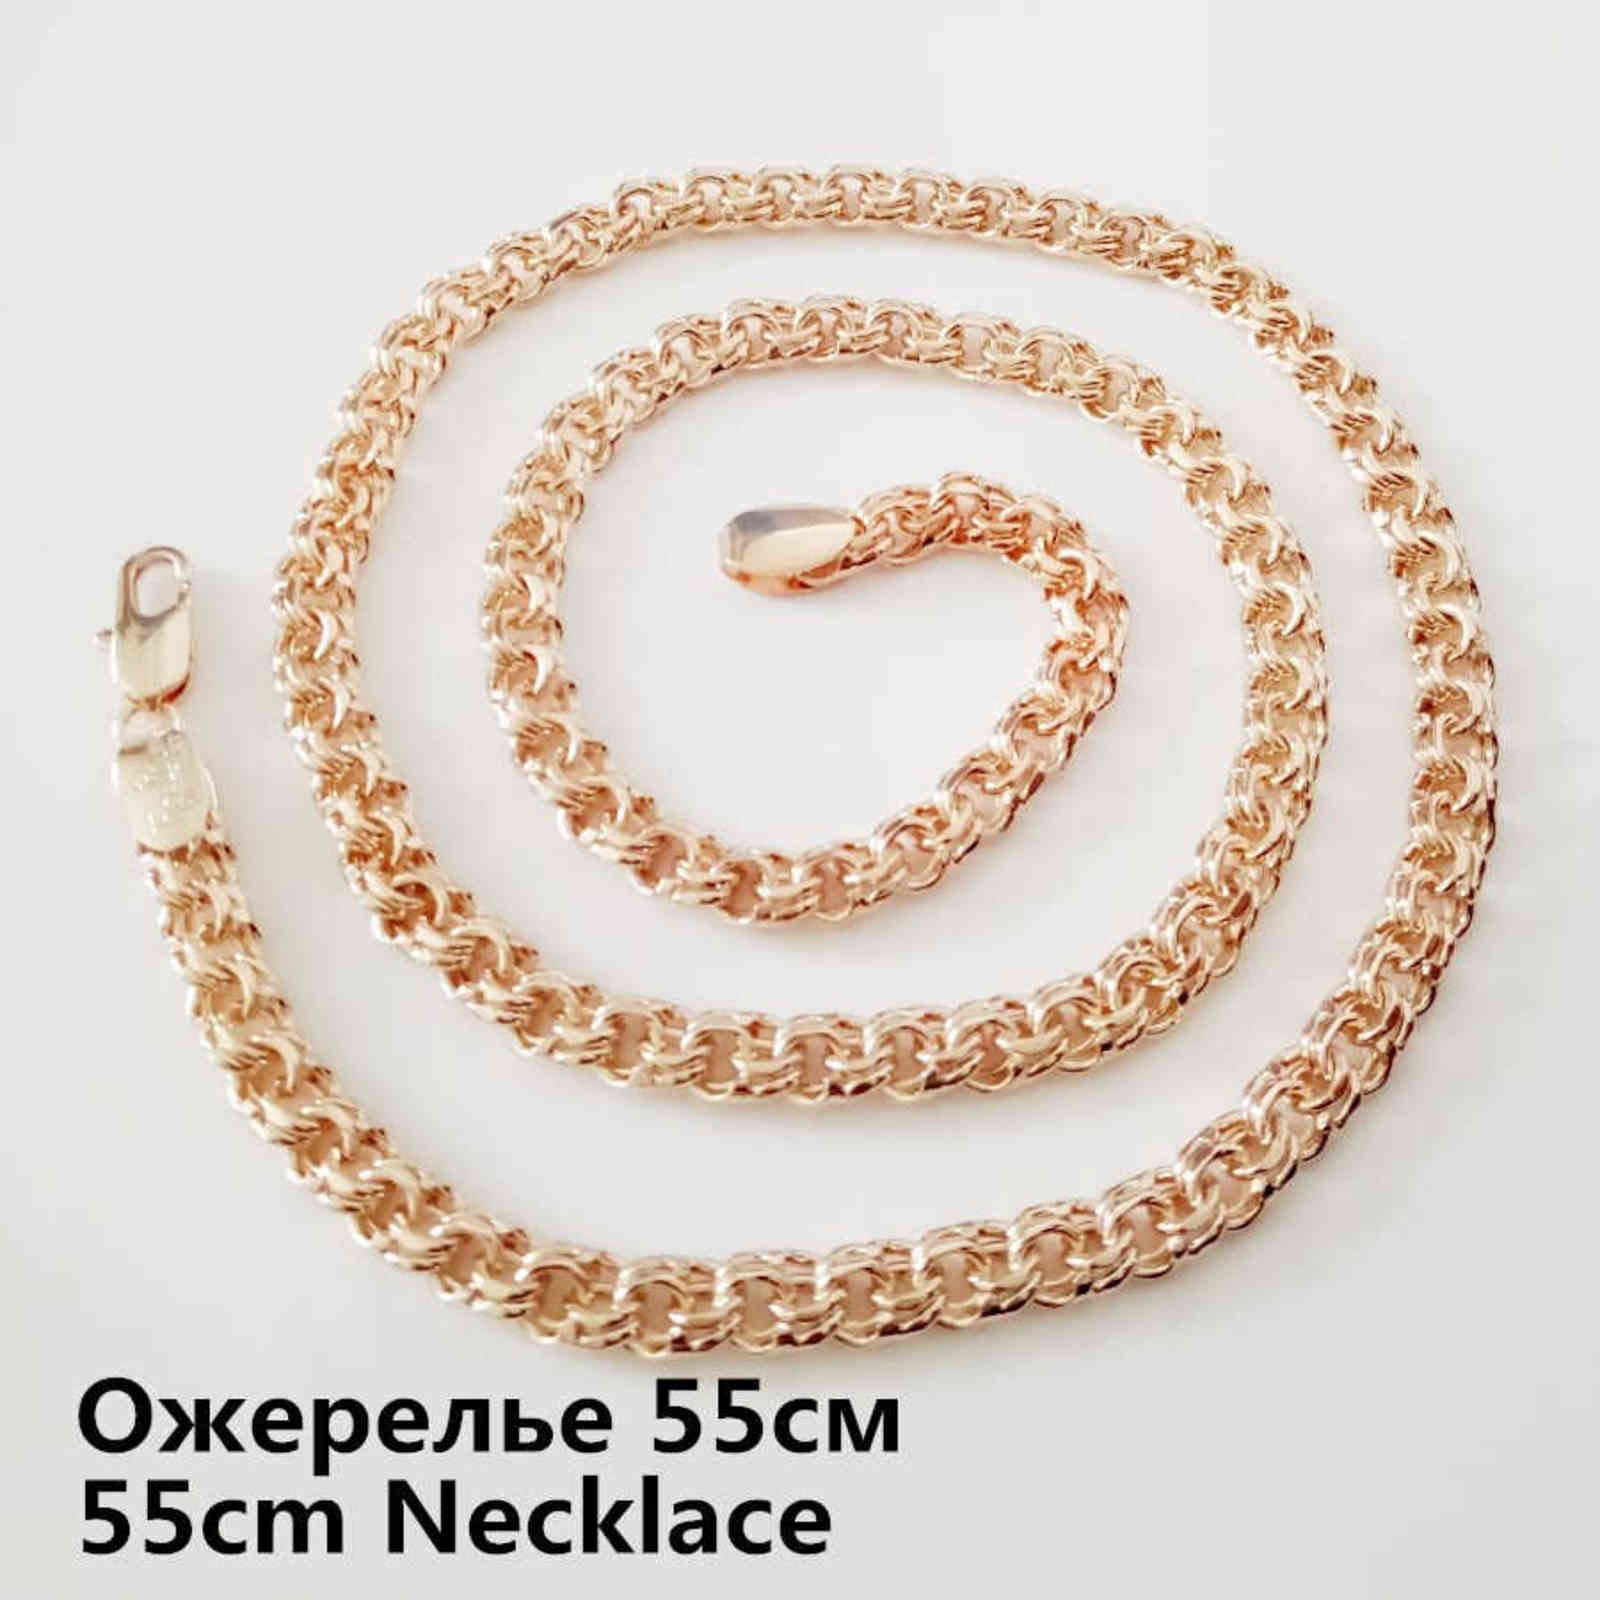 55cm Necklace